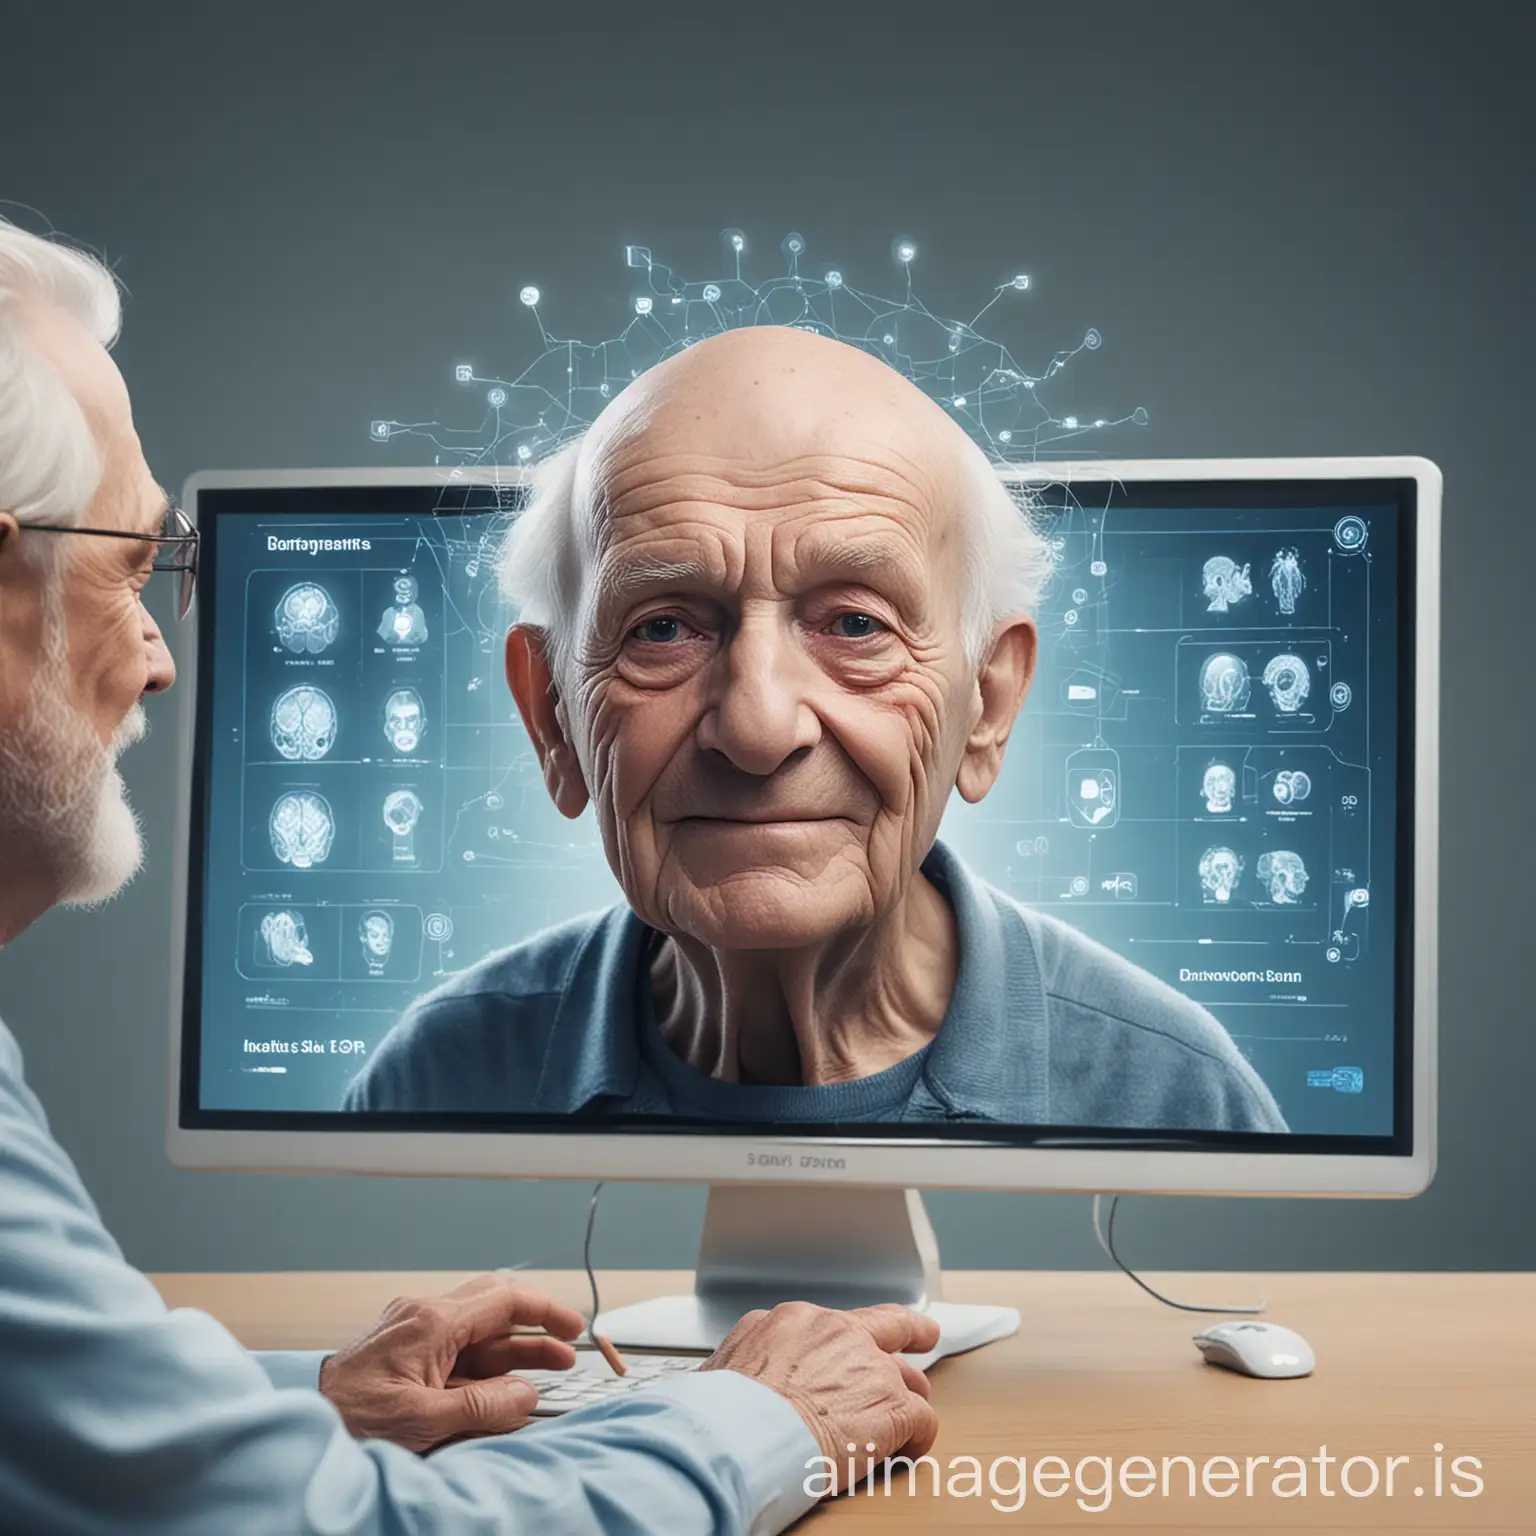 科技与关怀
描述：

背景：柔和的蓝色渐变，代表科技和关怀。
主体：一个老年人微笑着面对屏幕，屏幕上有益智游戏的界面。
细节：老年人旁边有一些虚拟的肢体检测关键点和人脸识别的框线，显示出科技的应用。
标题：基于人脸识别和肢体检测的老年痴呆患者专用游戏机
副标题：益智游戏与康复训练\

